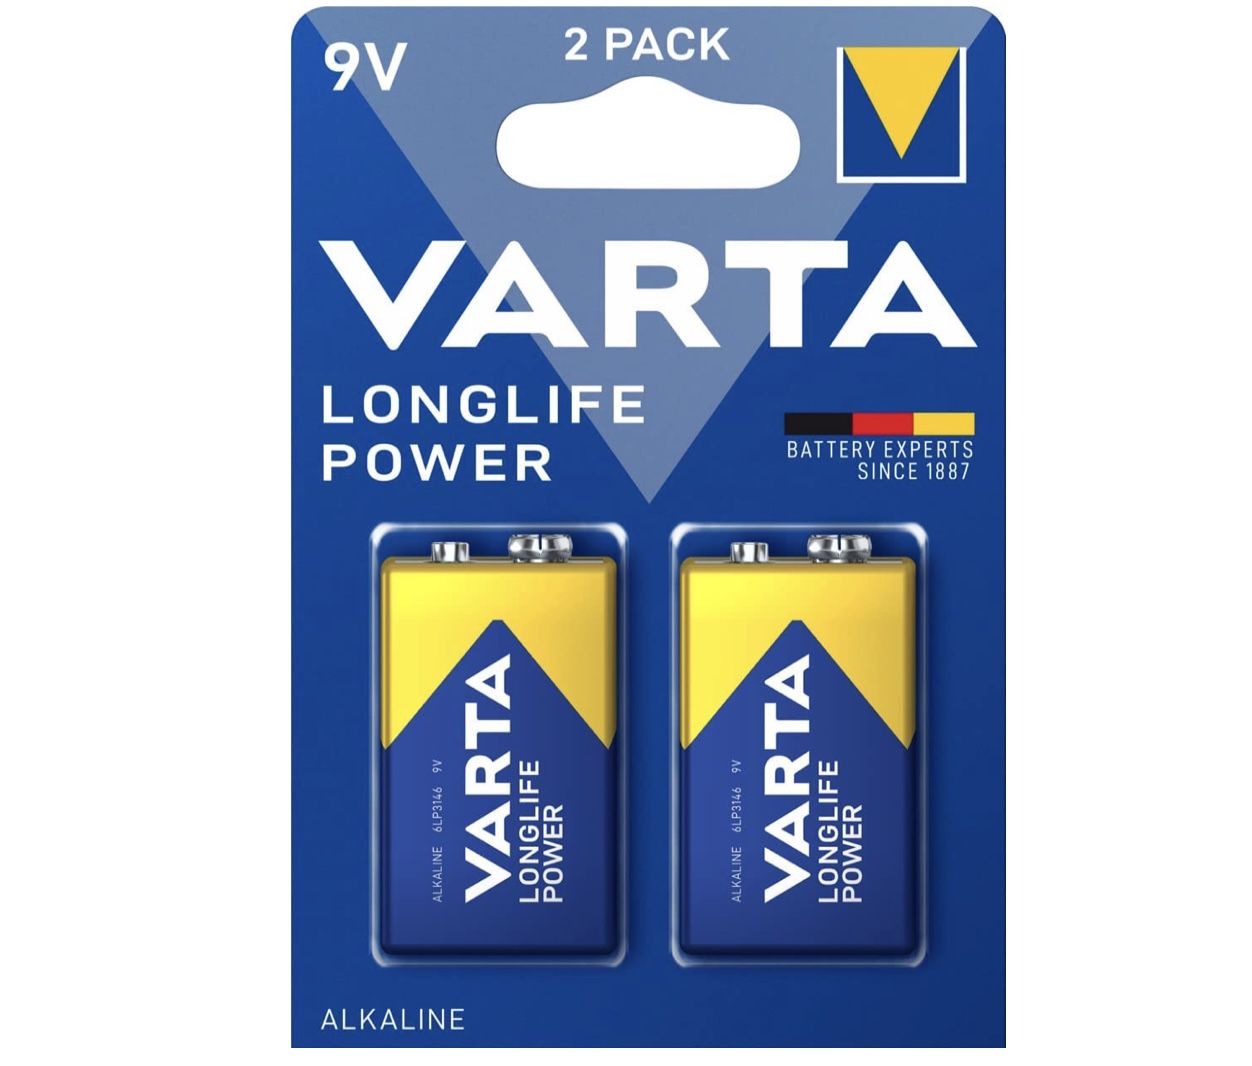 2er Pack VARTA Longlife Power 9V Block 6LR61 Batterie für 3,46€ (statt 5€) &#8211; Prime